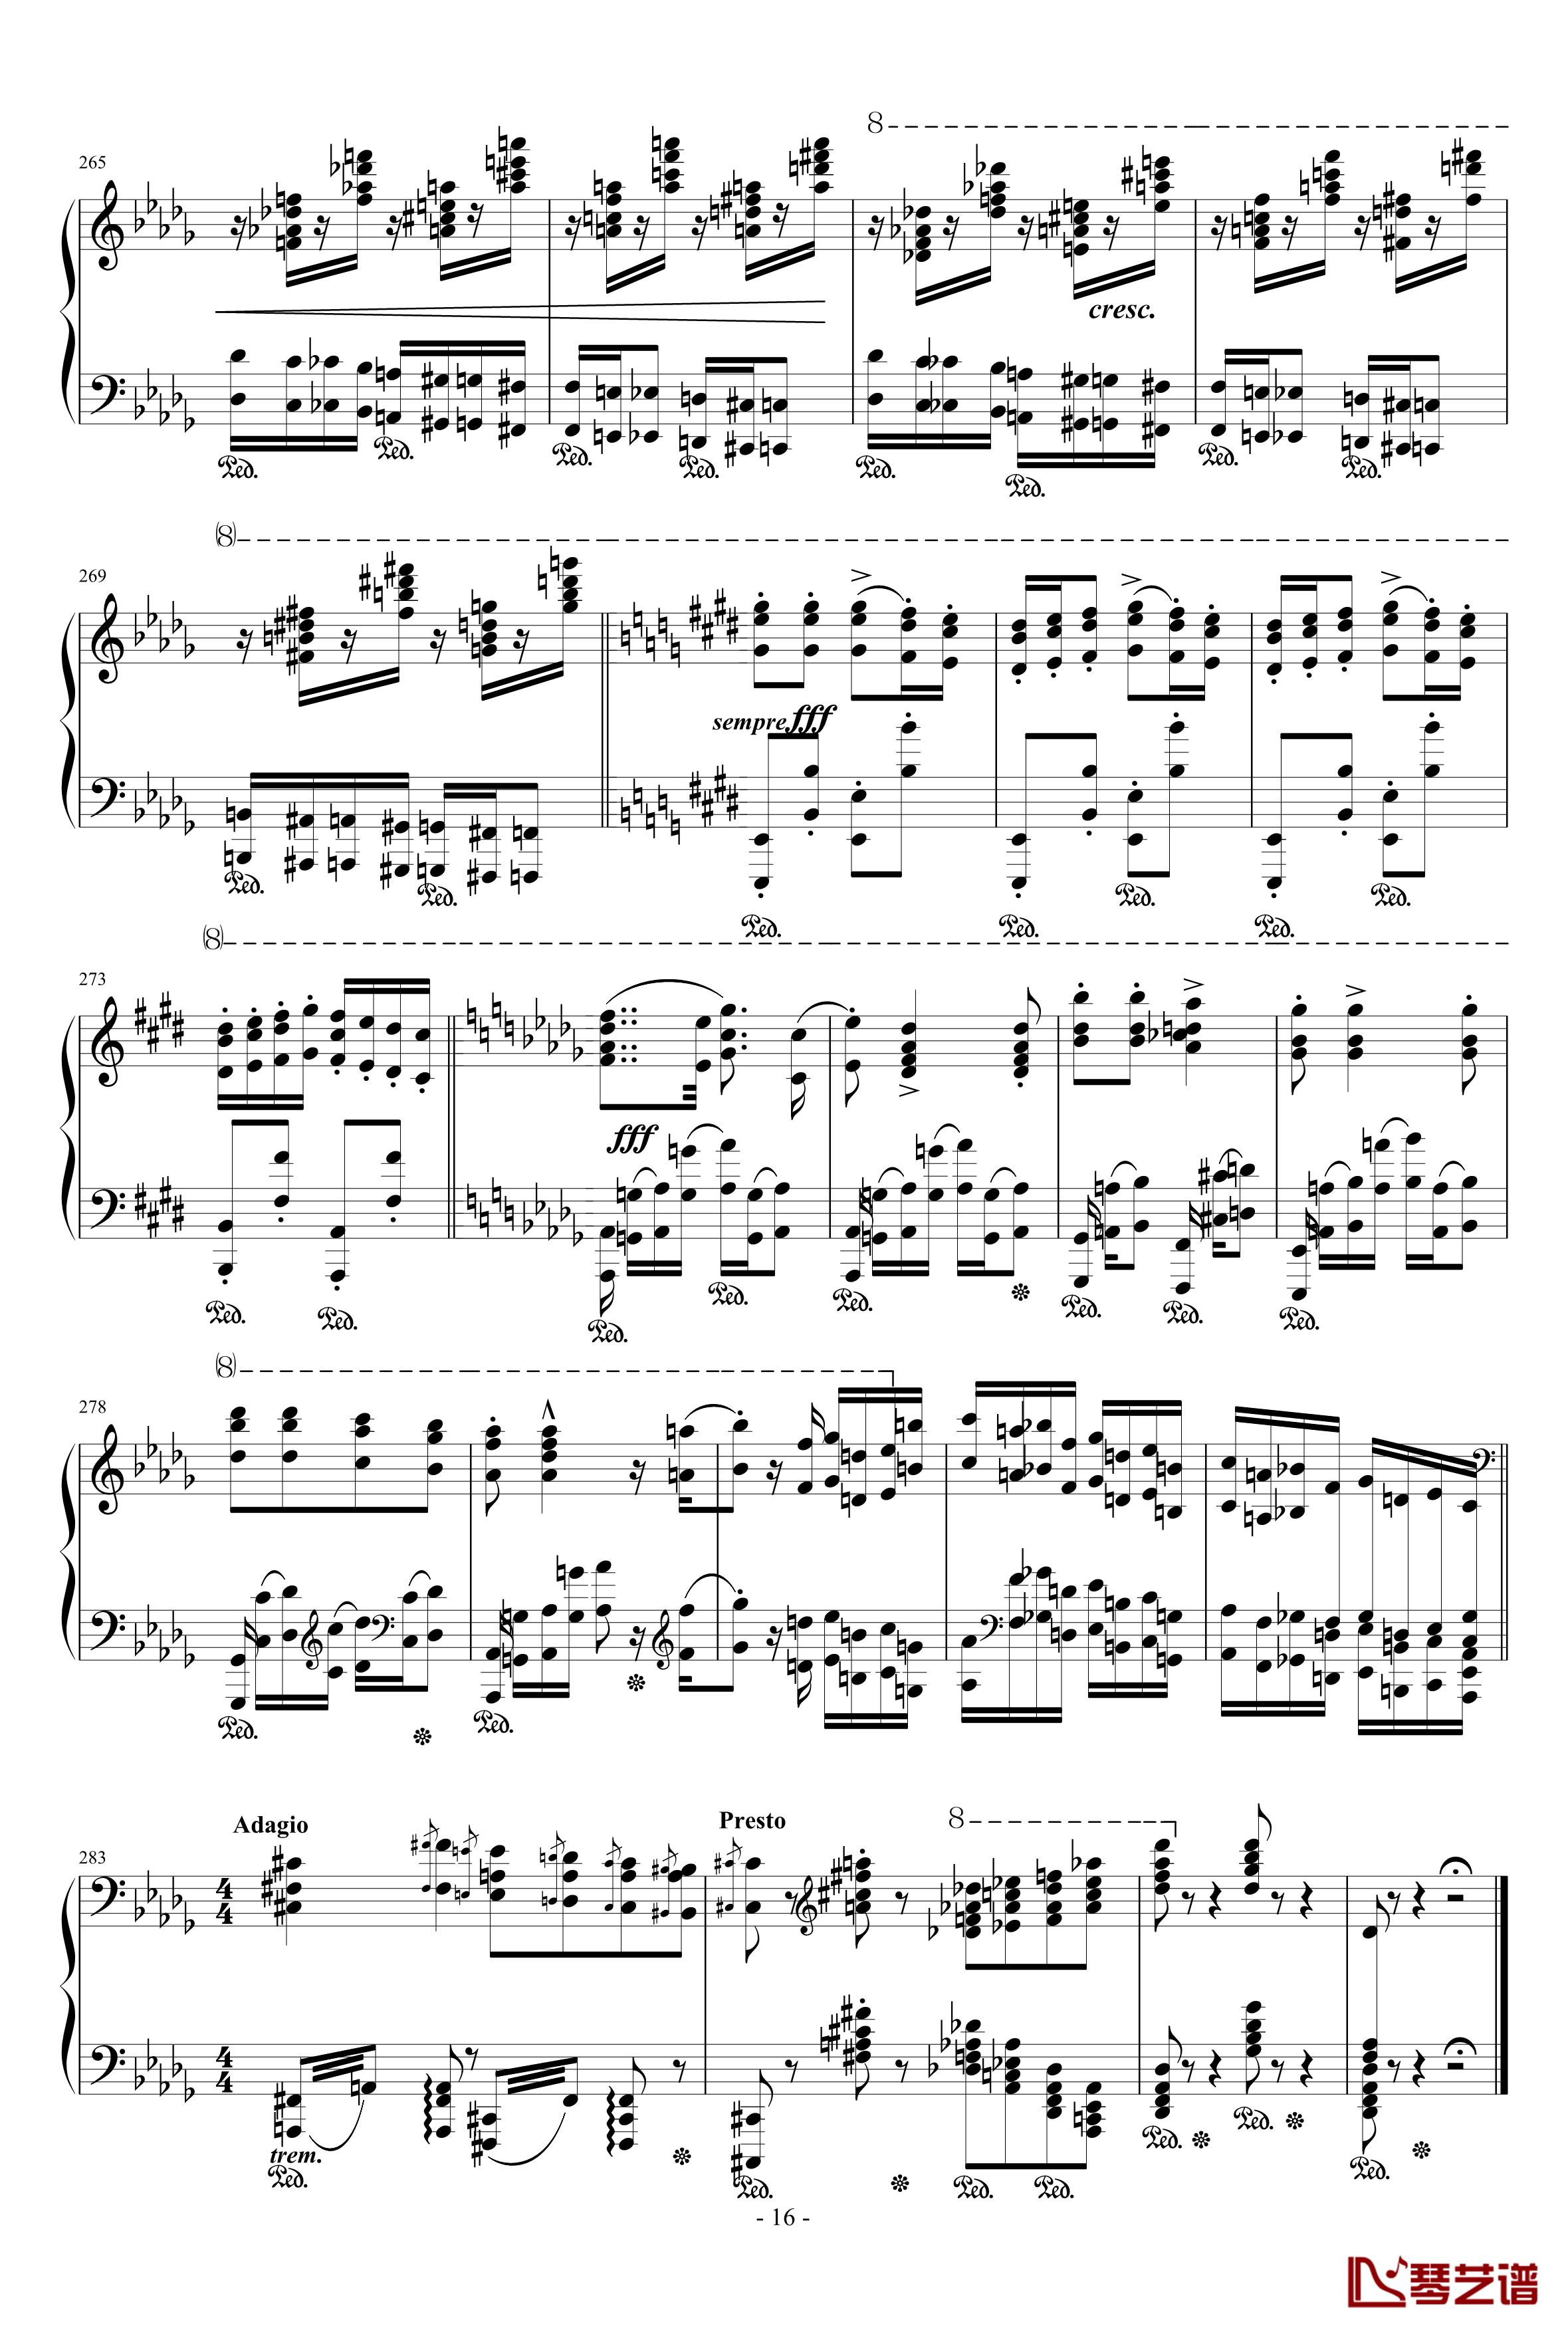 匈牙利狂想曲12号钢琴谱-著名的匈狂-李斯特16